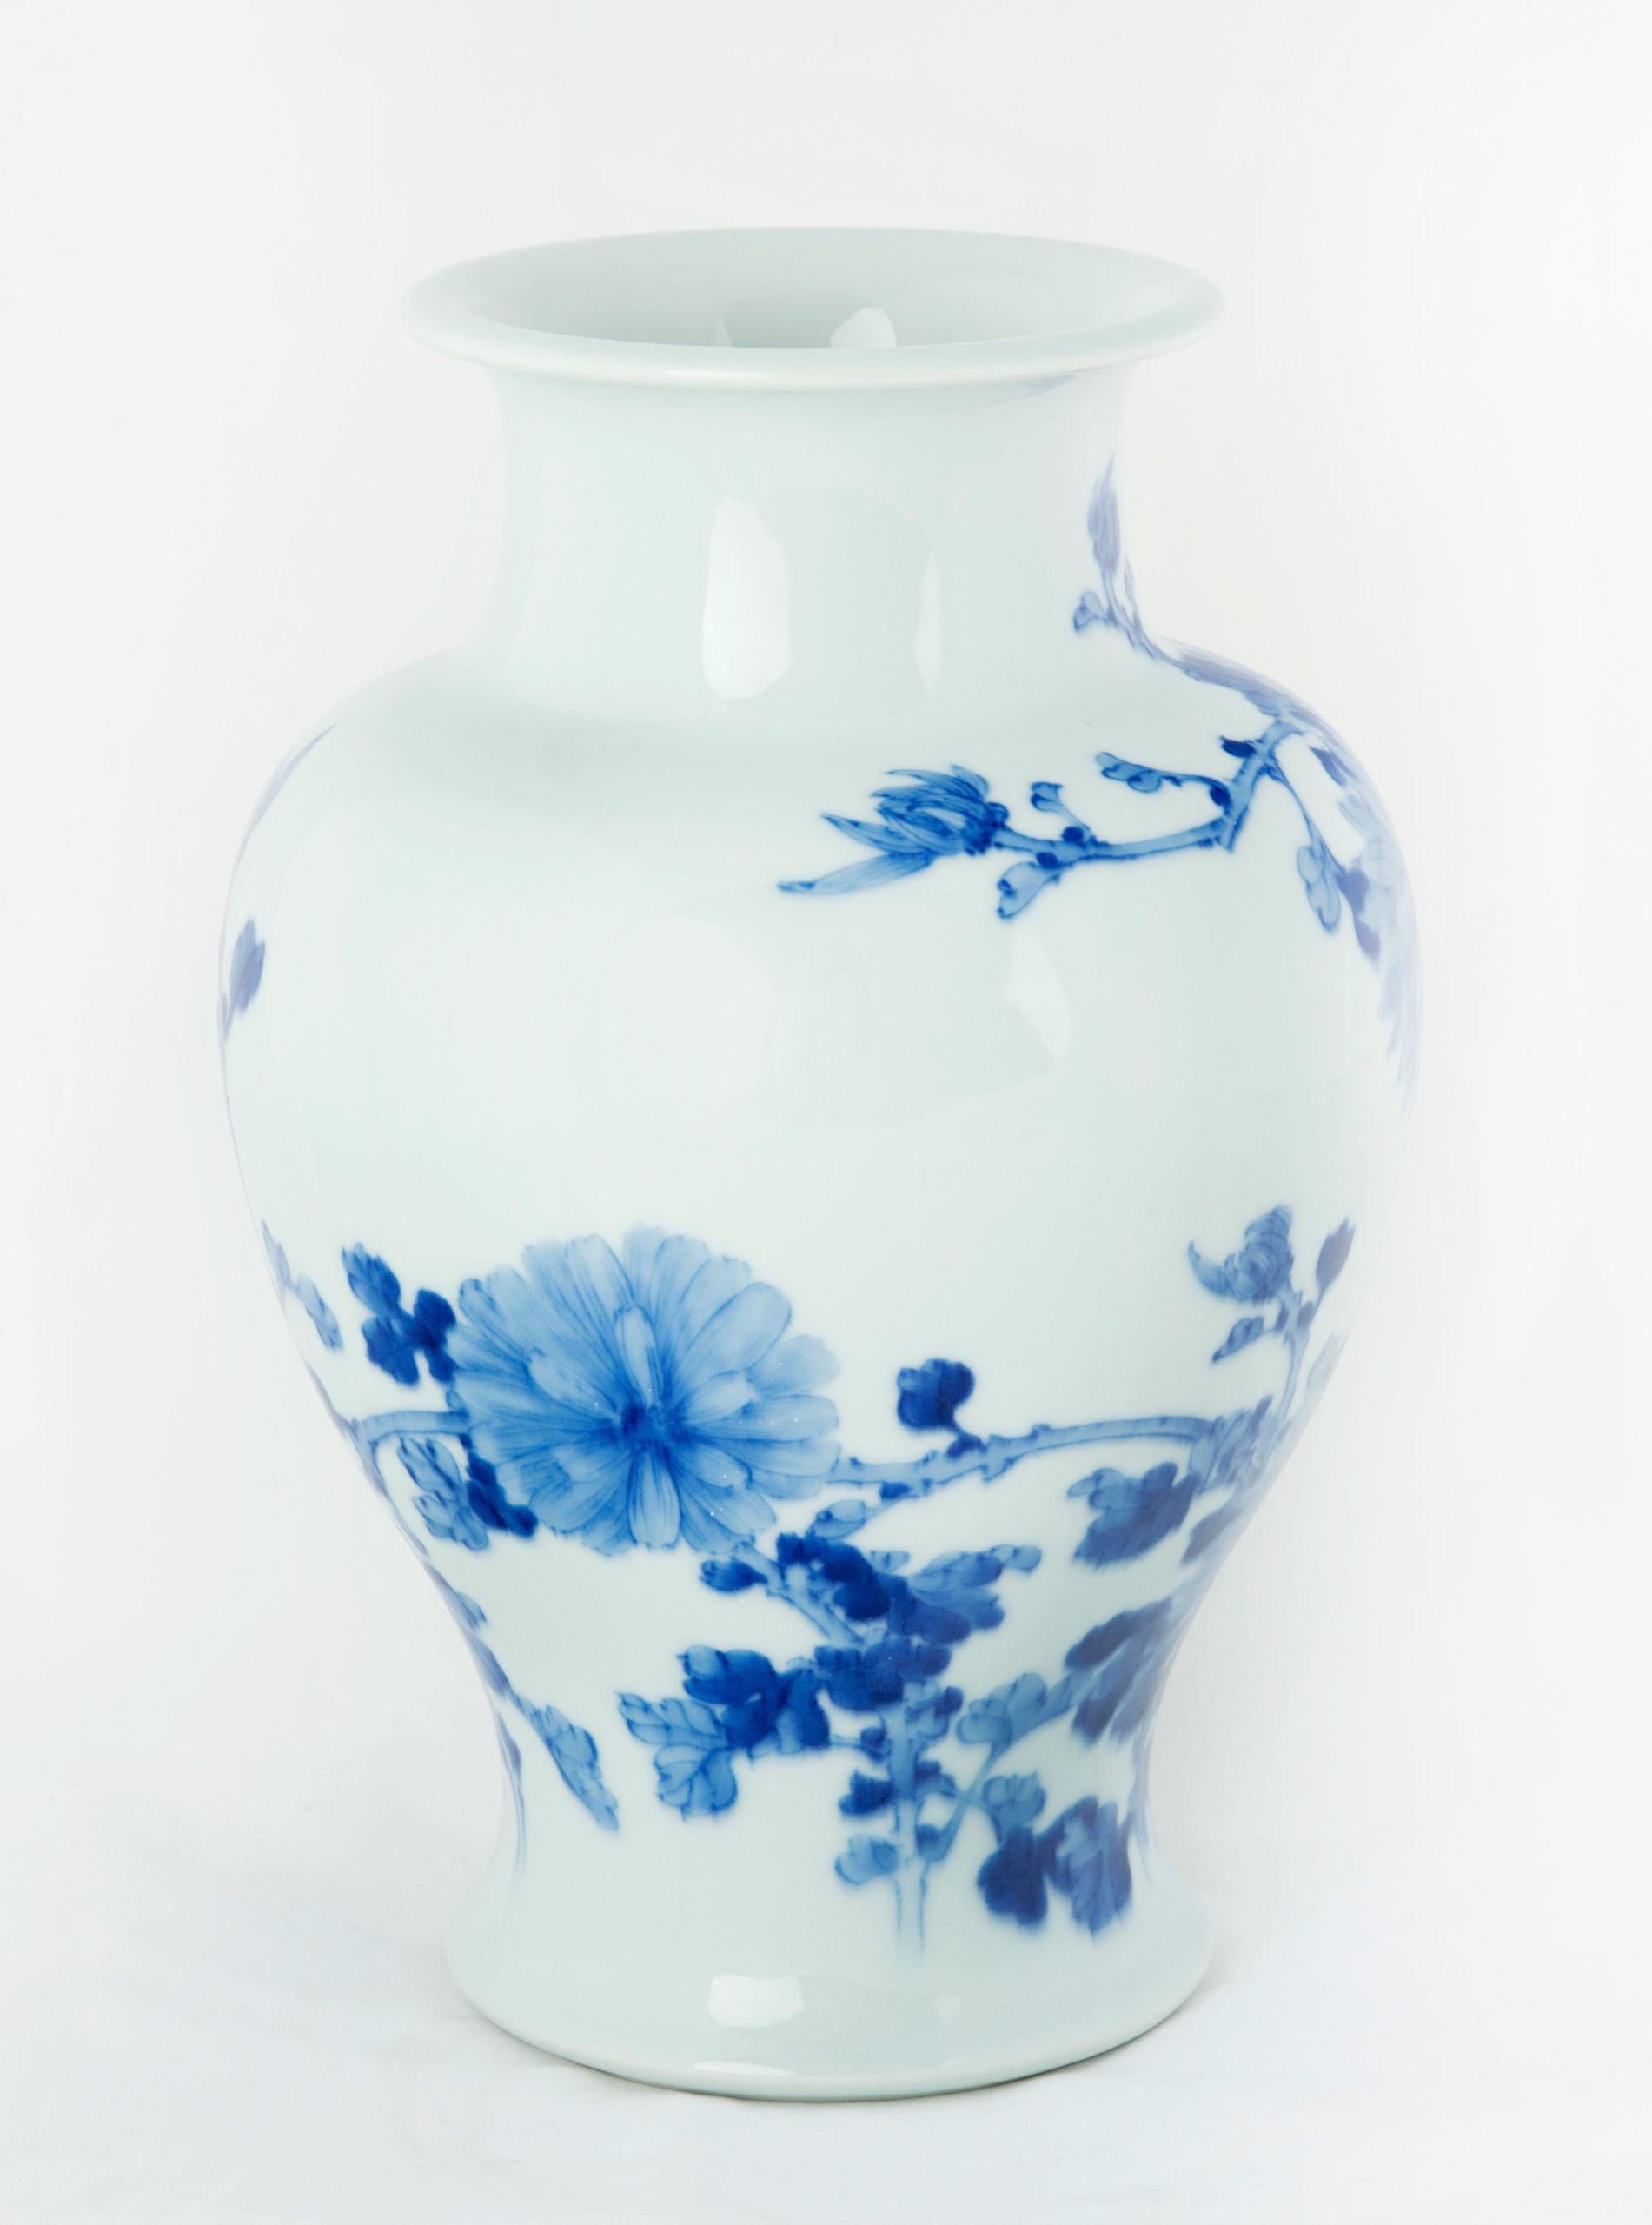 Dans le cadre de notre collection d'œuvres d'art japonaises, nous sommes ravis de proposer ce charmant vase balustre en céramique de la période Meiji 1868-1912, réalisé dans les studios du très convoité artiste impérial Miyagawa Makuzu Kozan